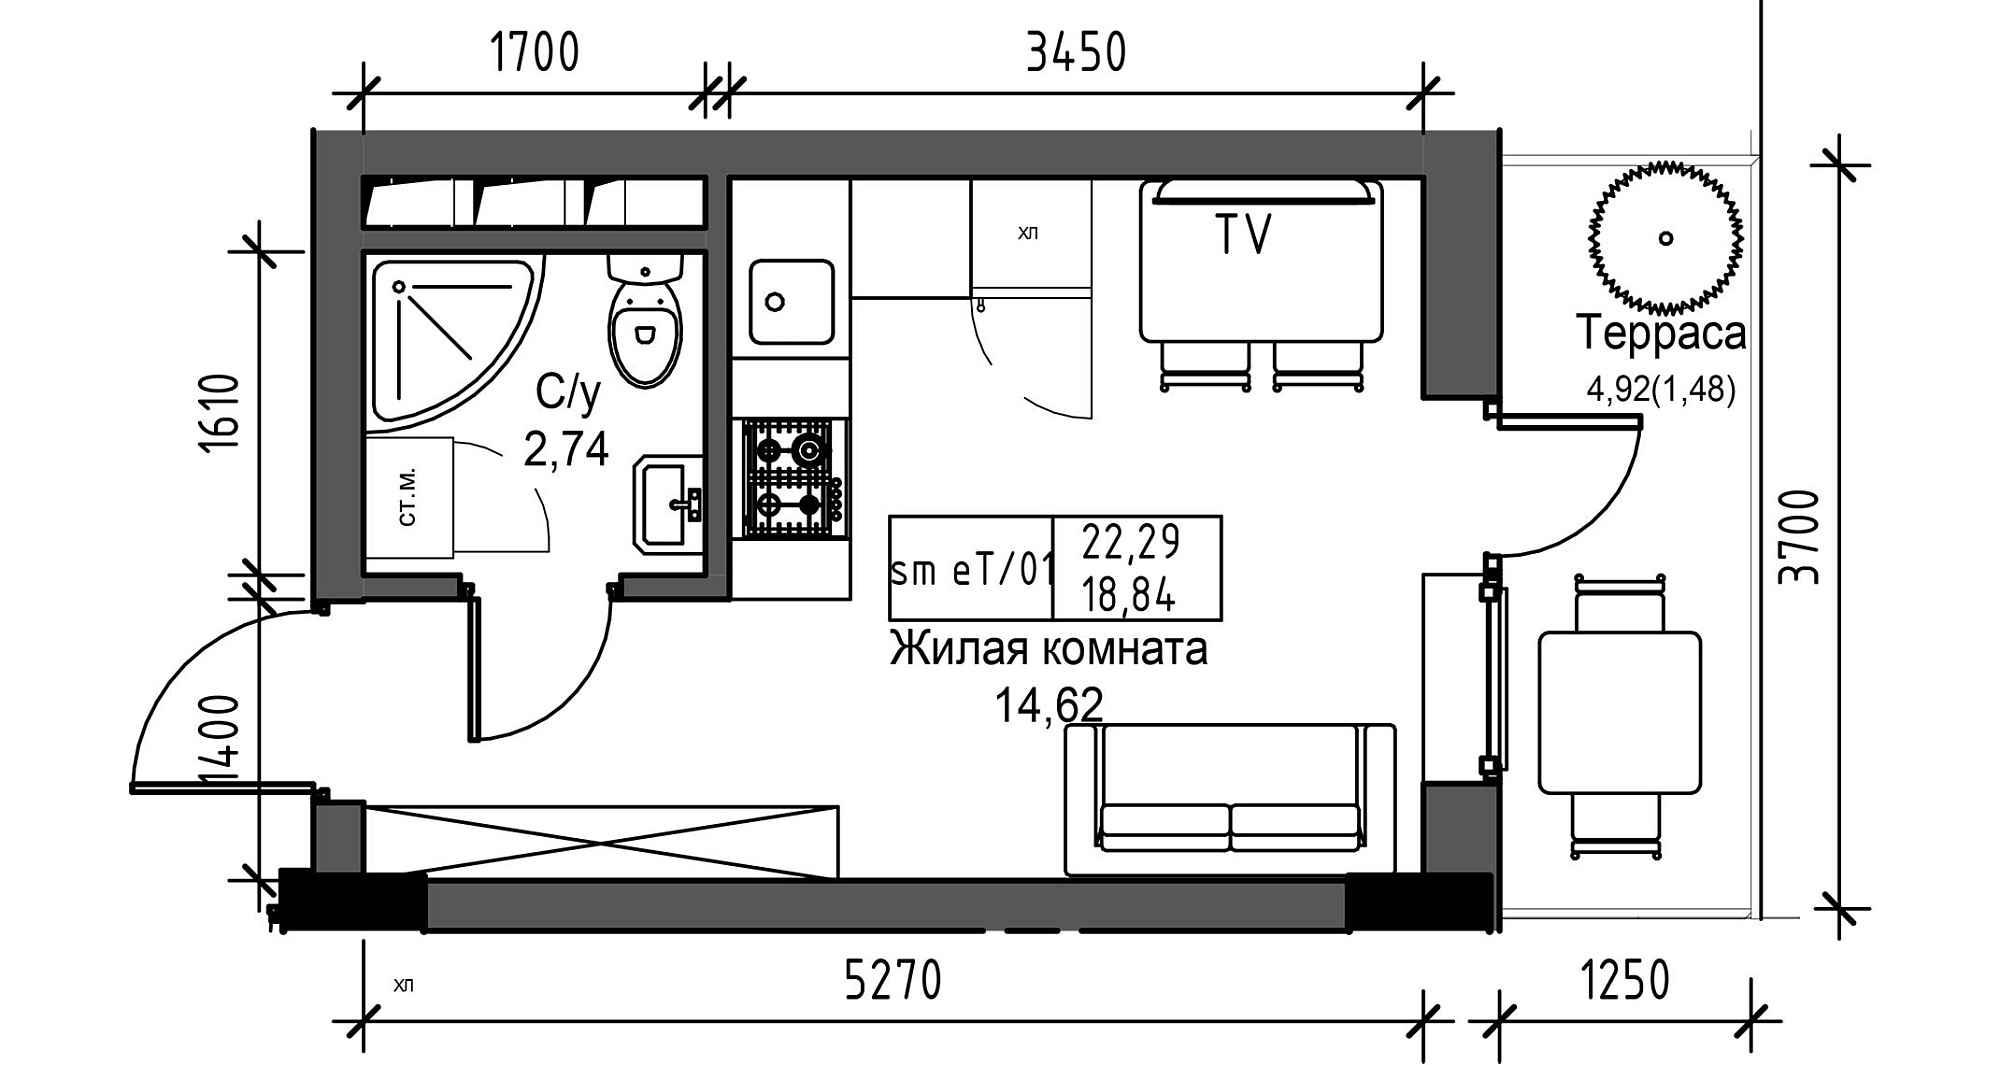 Планировка Smart-квартира площей 18.84м2, UM-003-07/0071.